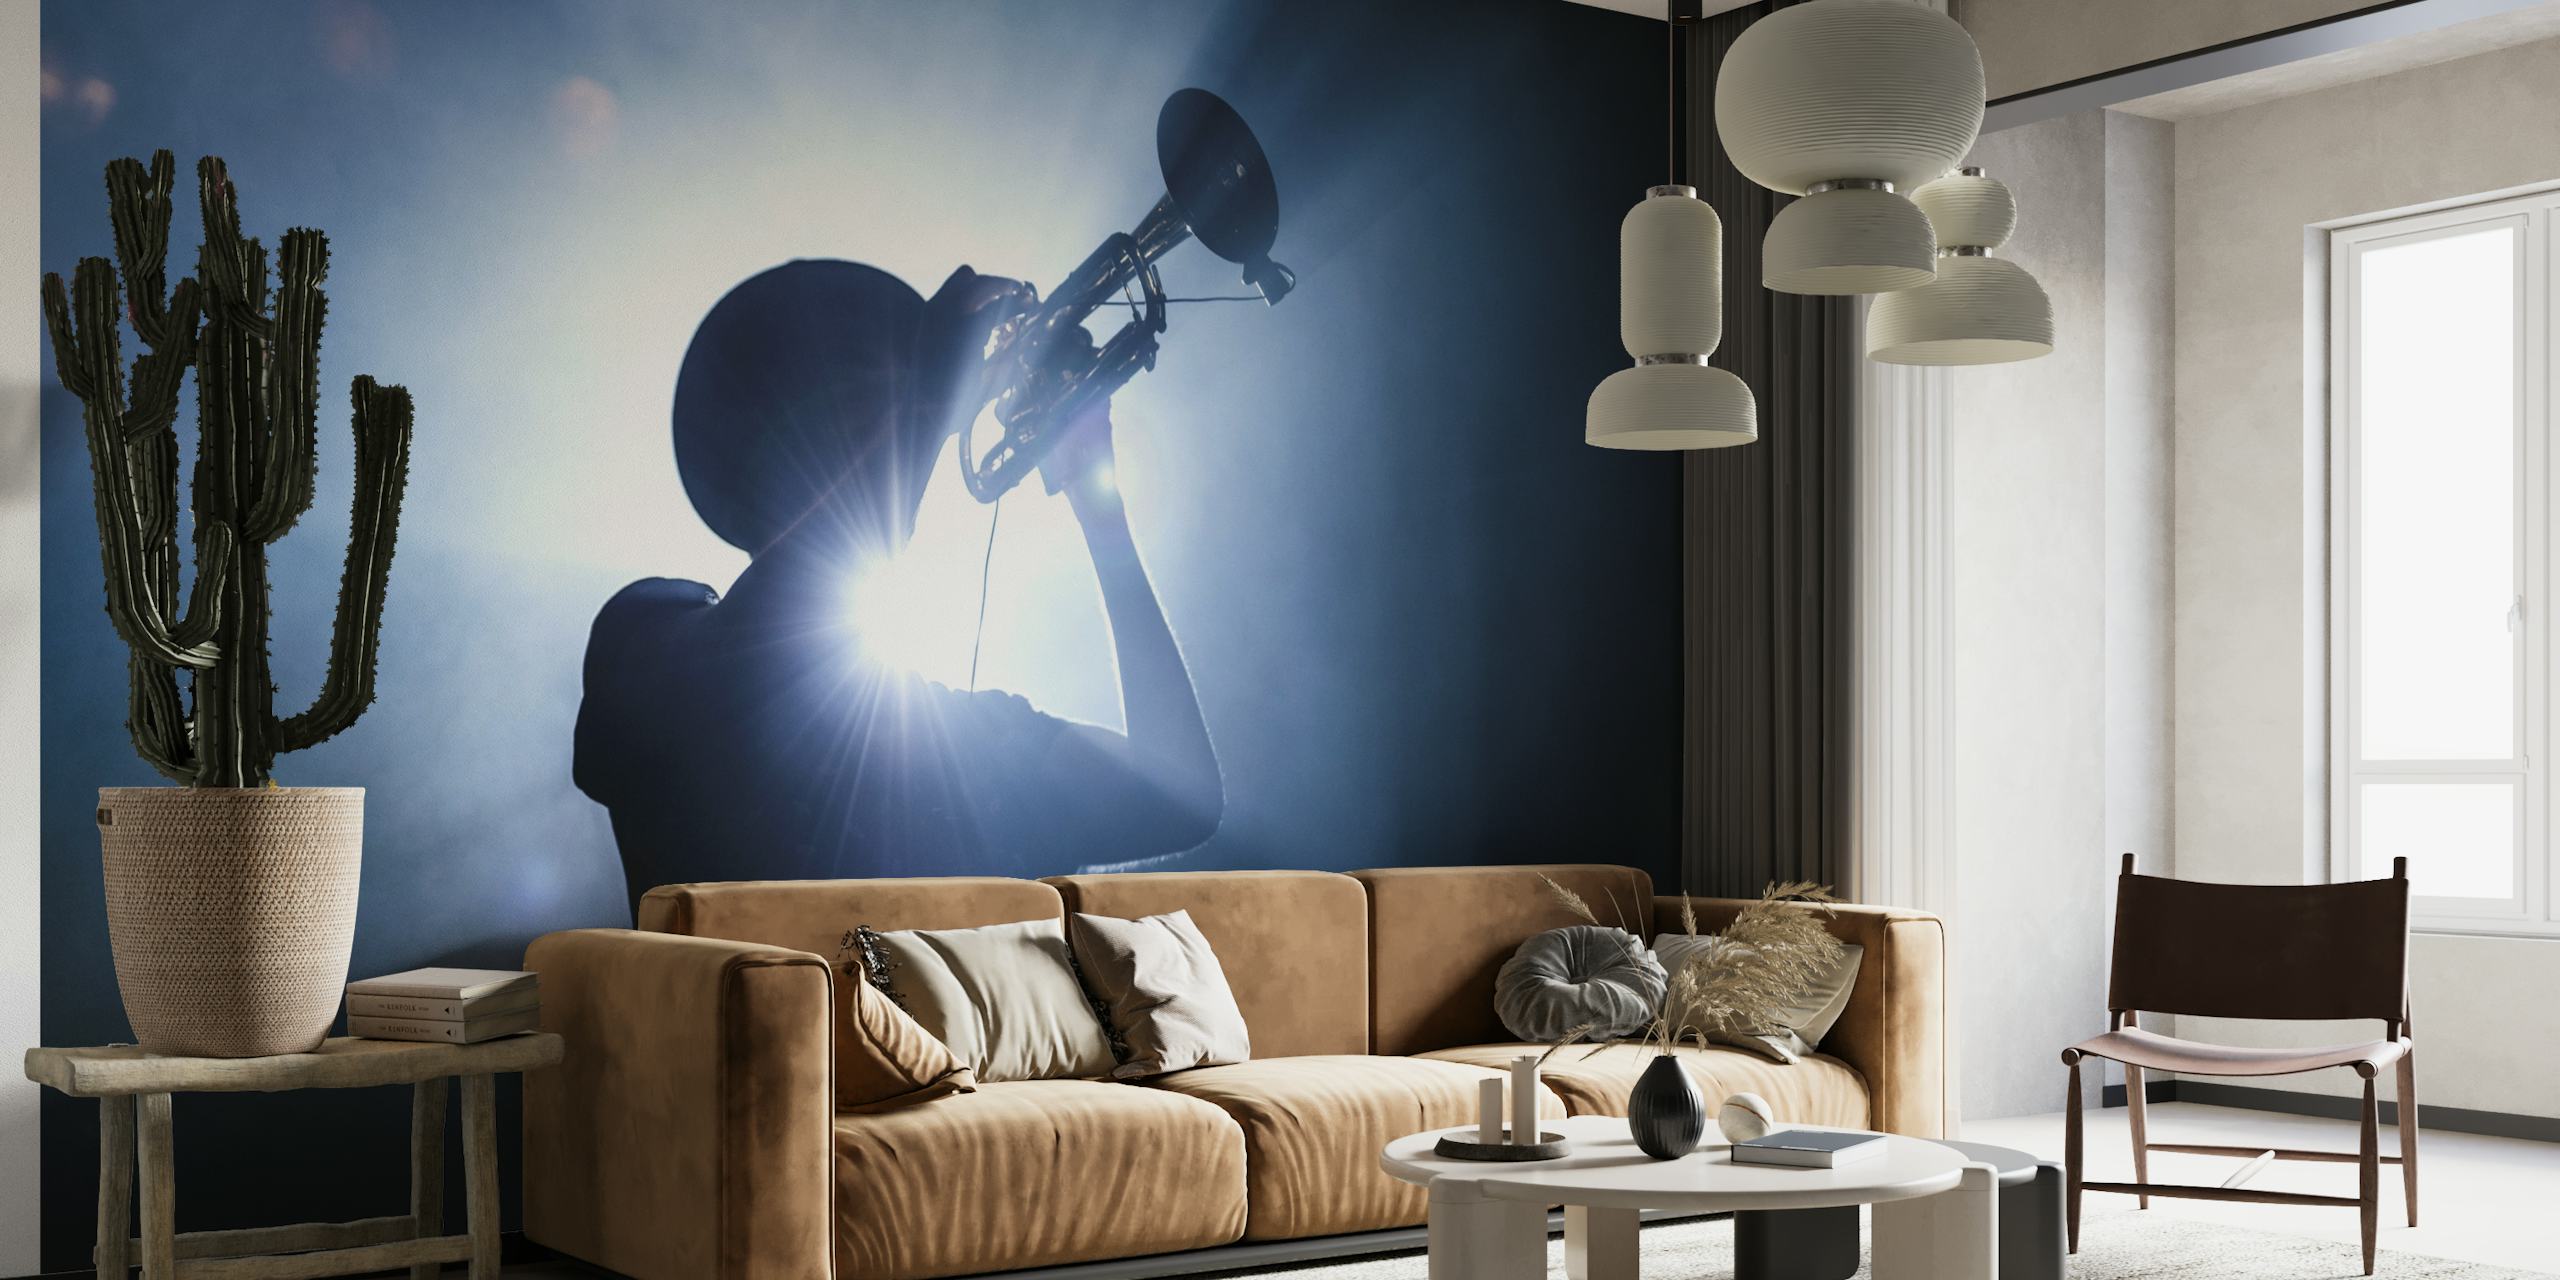 Silhueta de um trompetista contra um cenário iluminado e temperamental, criando uma imagem de mural de parede imponente.